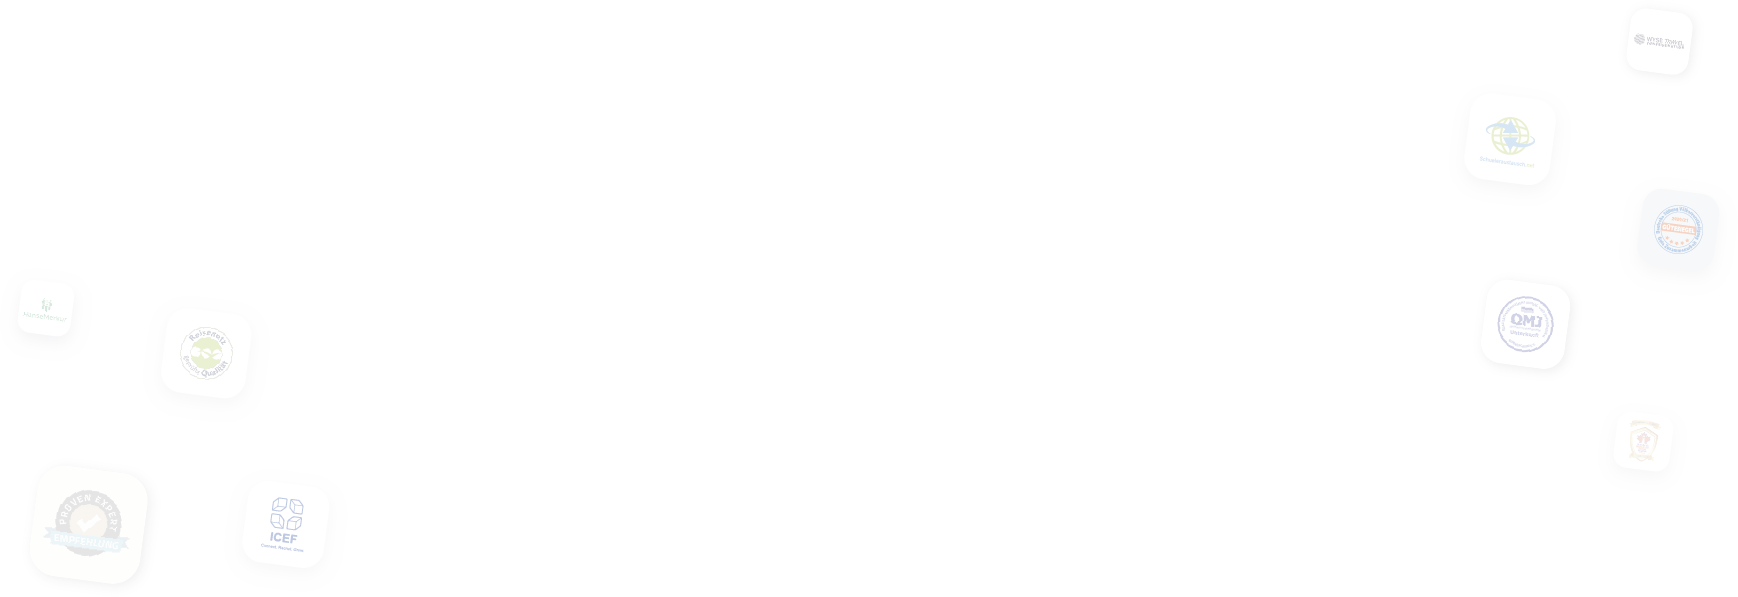 logo_bg_image-1